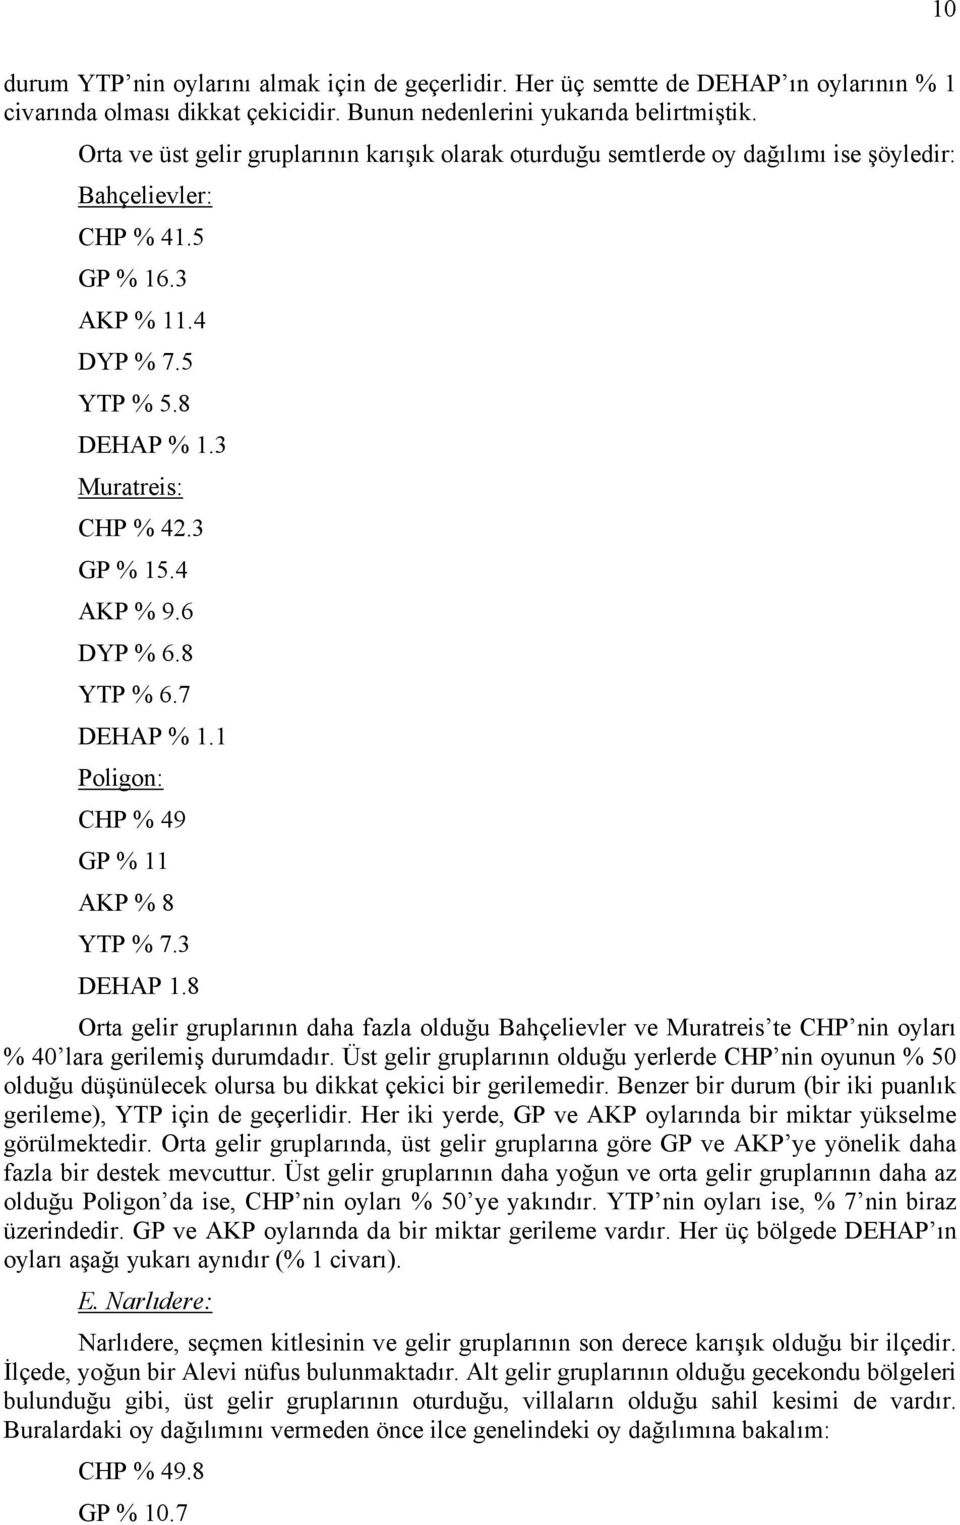 4 AKP % 9.6 DYP % 6.8 YTP % 6.7 DEHAP % 1.1 Poligon: CHP % 49 GP % 11 AKP % 8 YTP % 7.3 DEHAP 1.